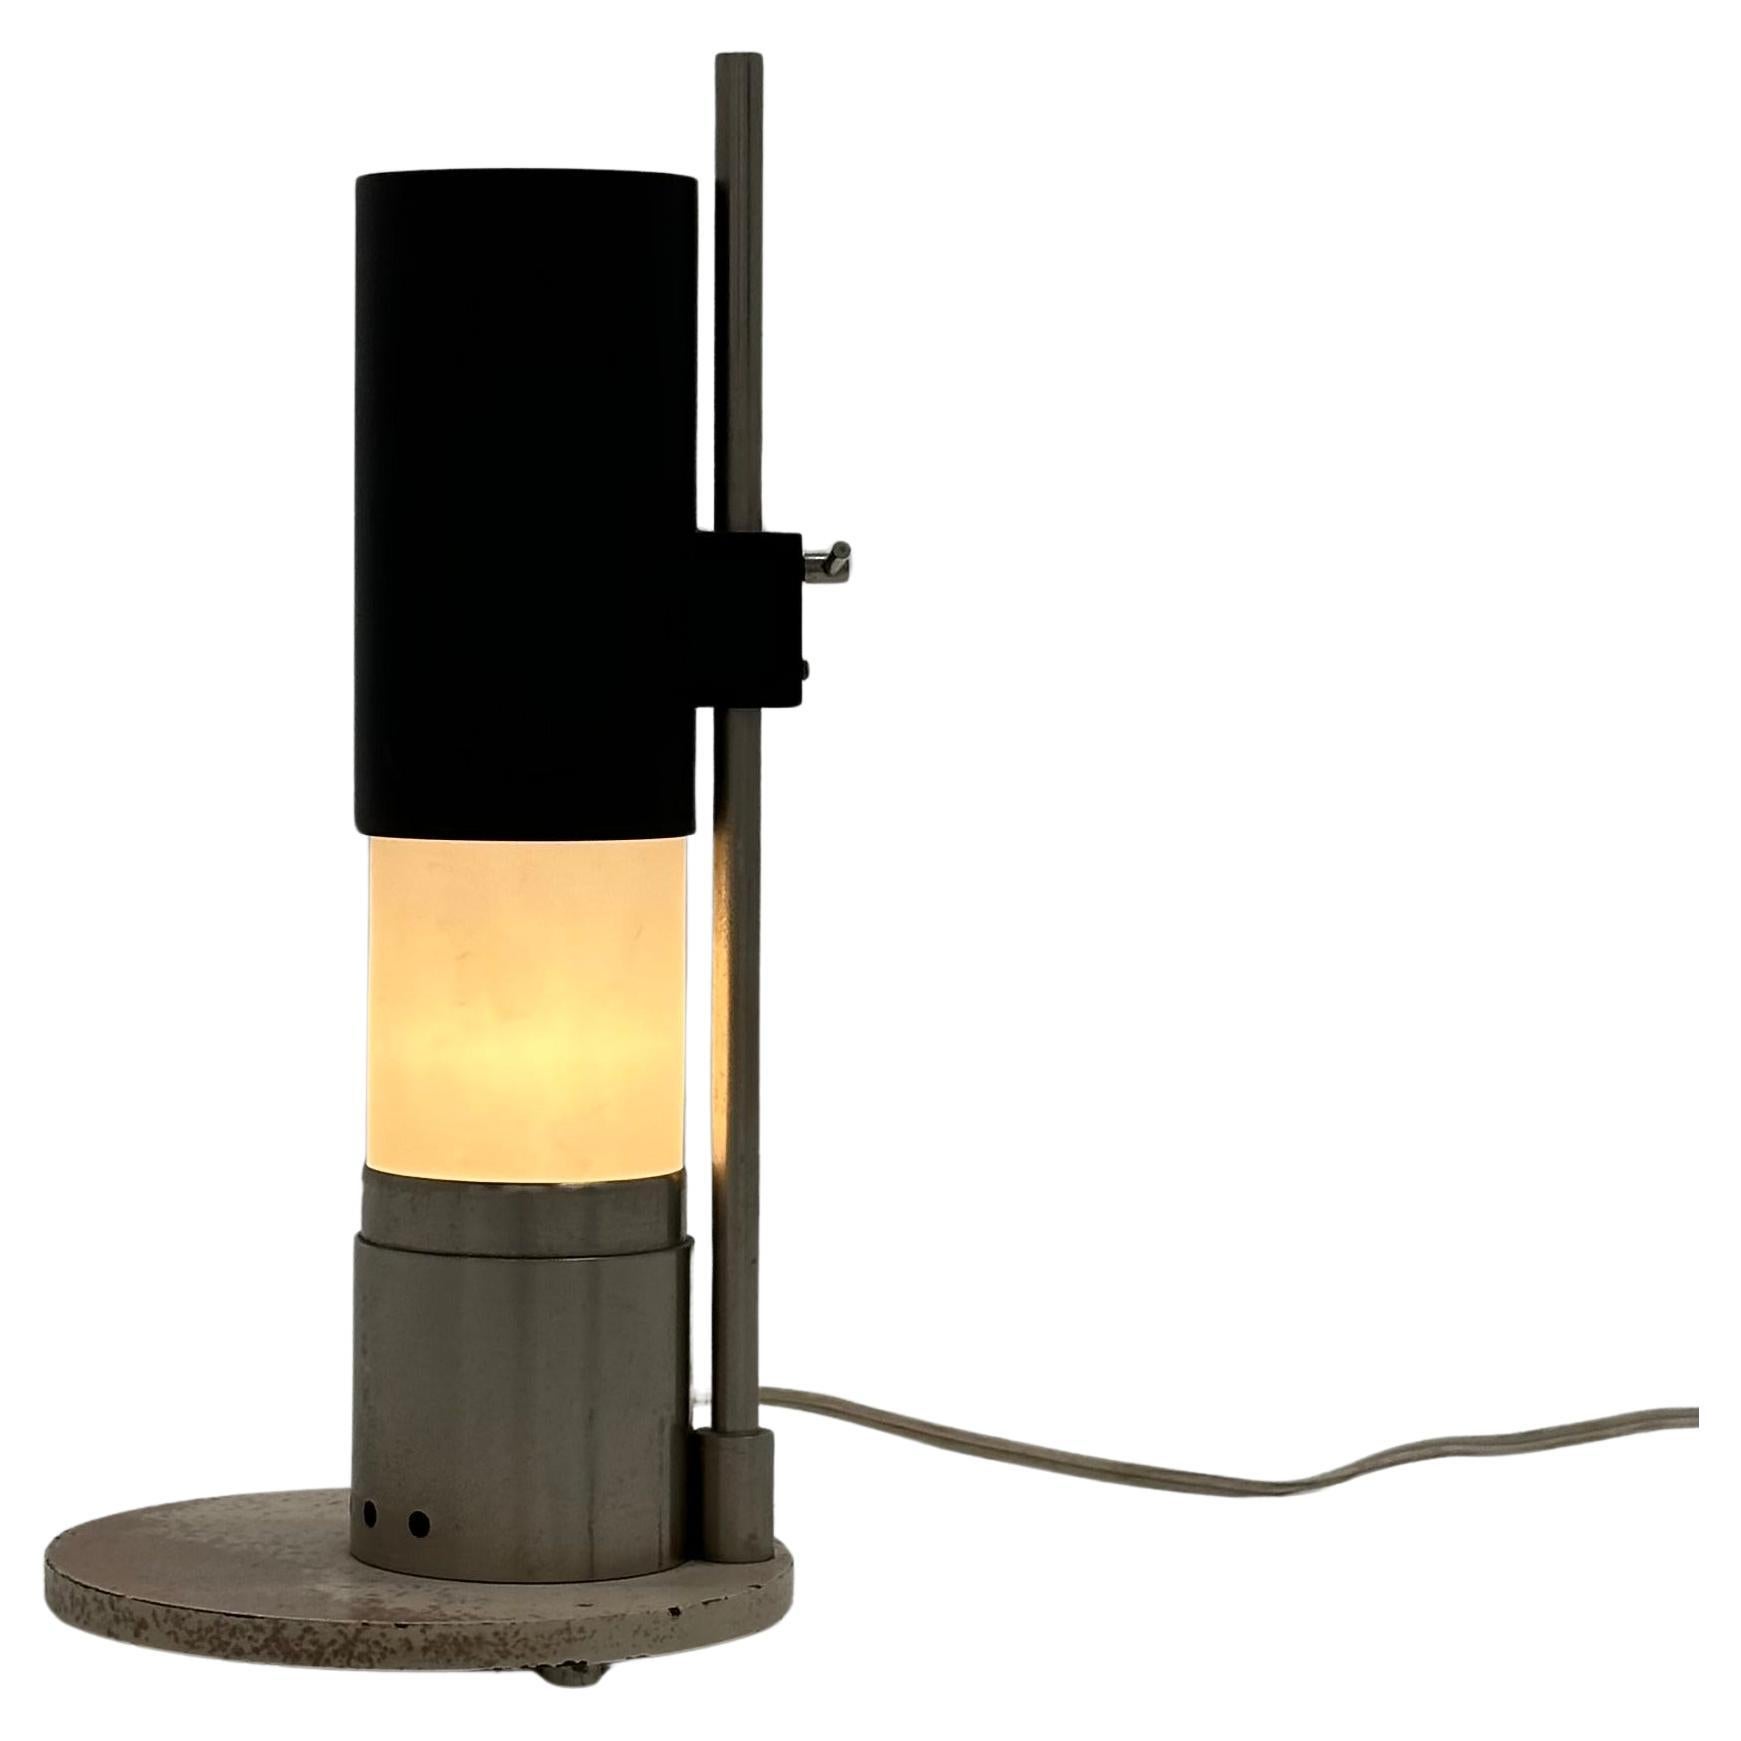 Lampe de table réglable Angelo Lelii modèle 12445 pour Arredoluce, Italie, vers 1954